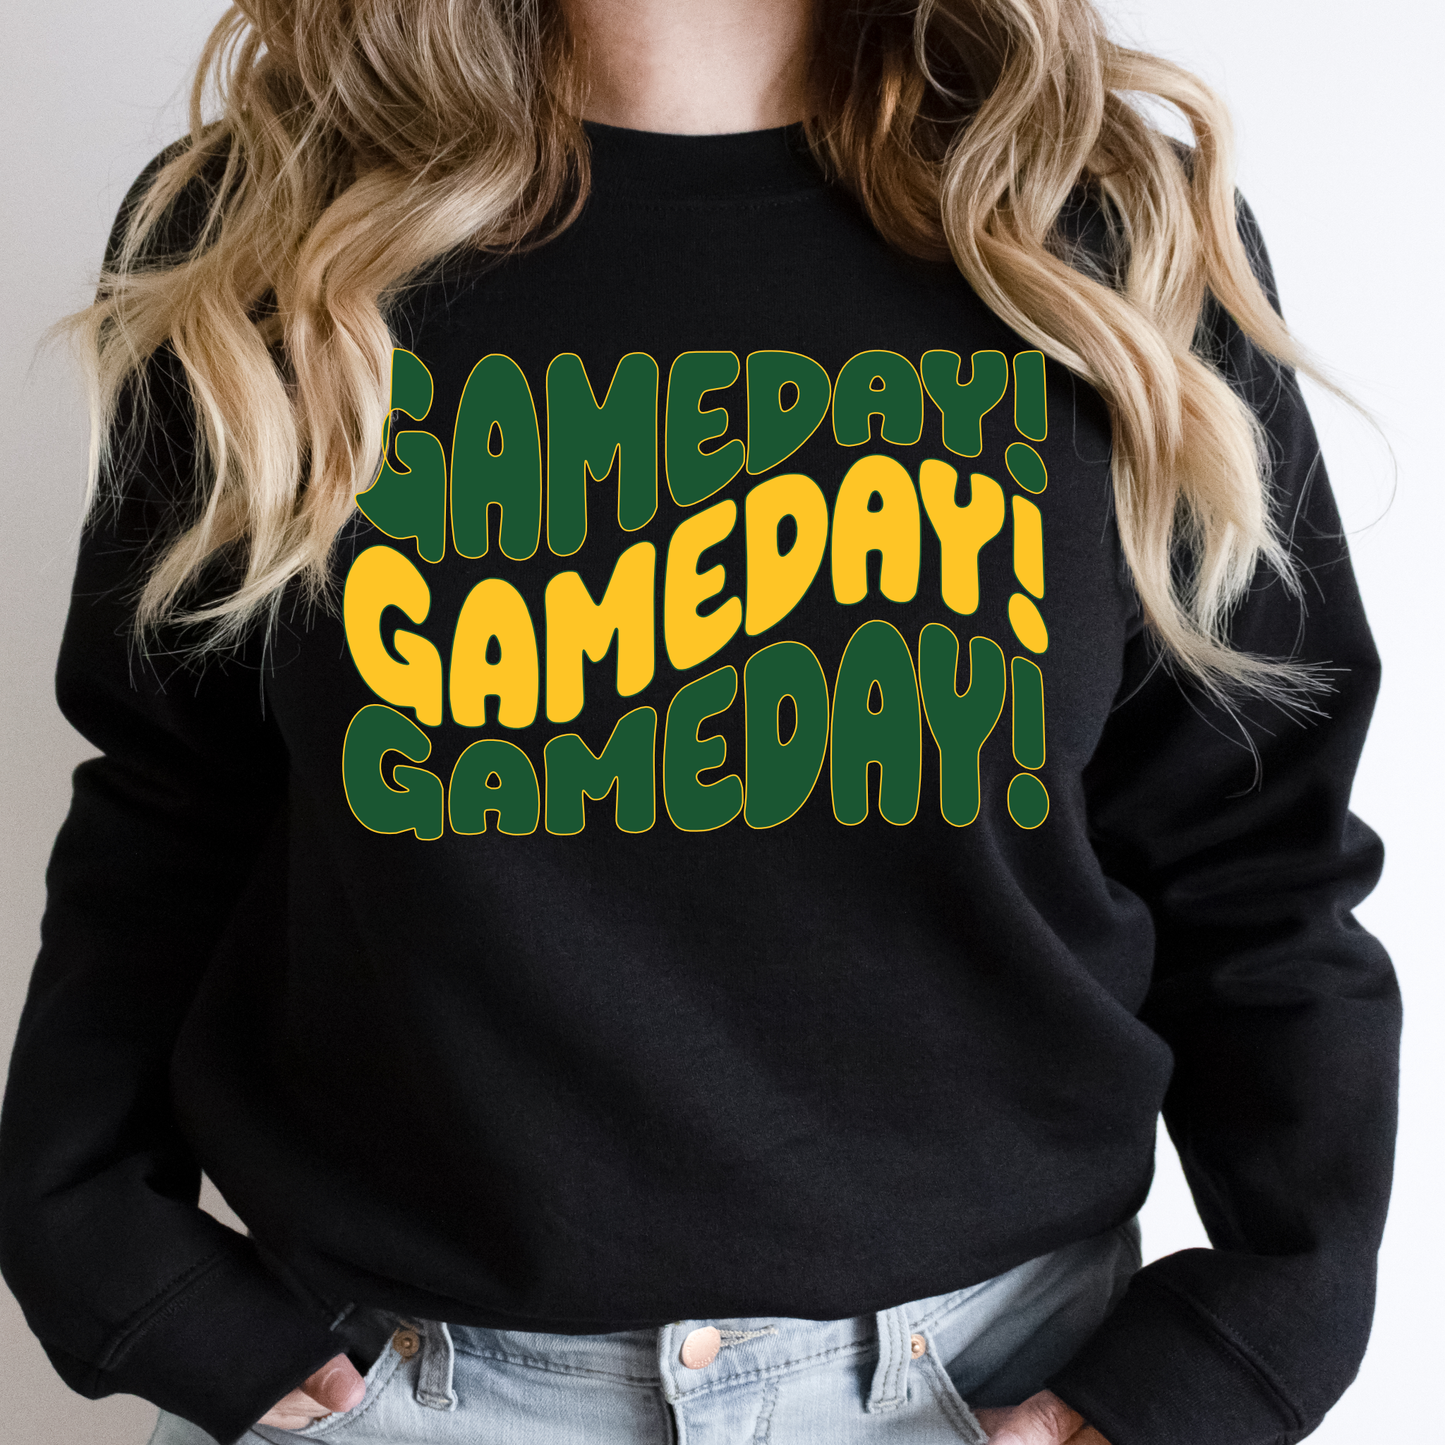 Groovy SLU GAME DAY Sweatshirt